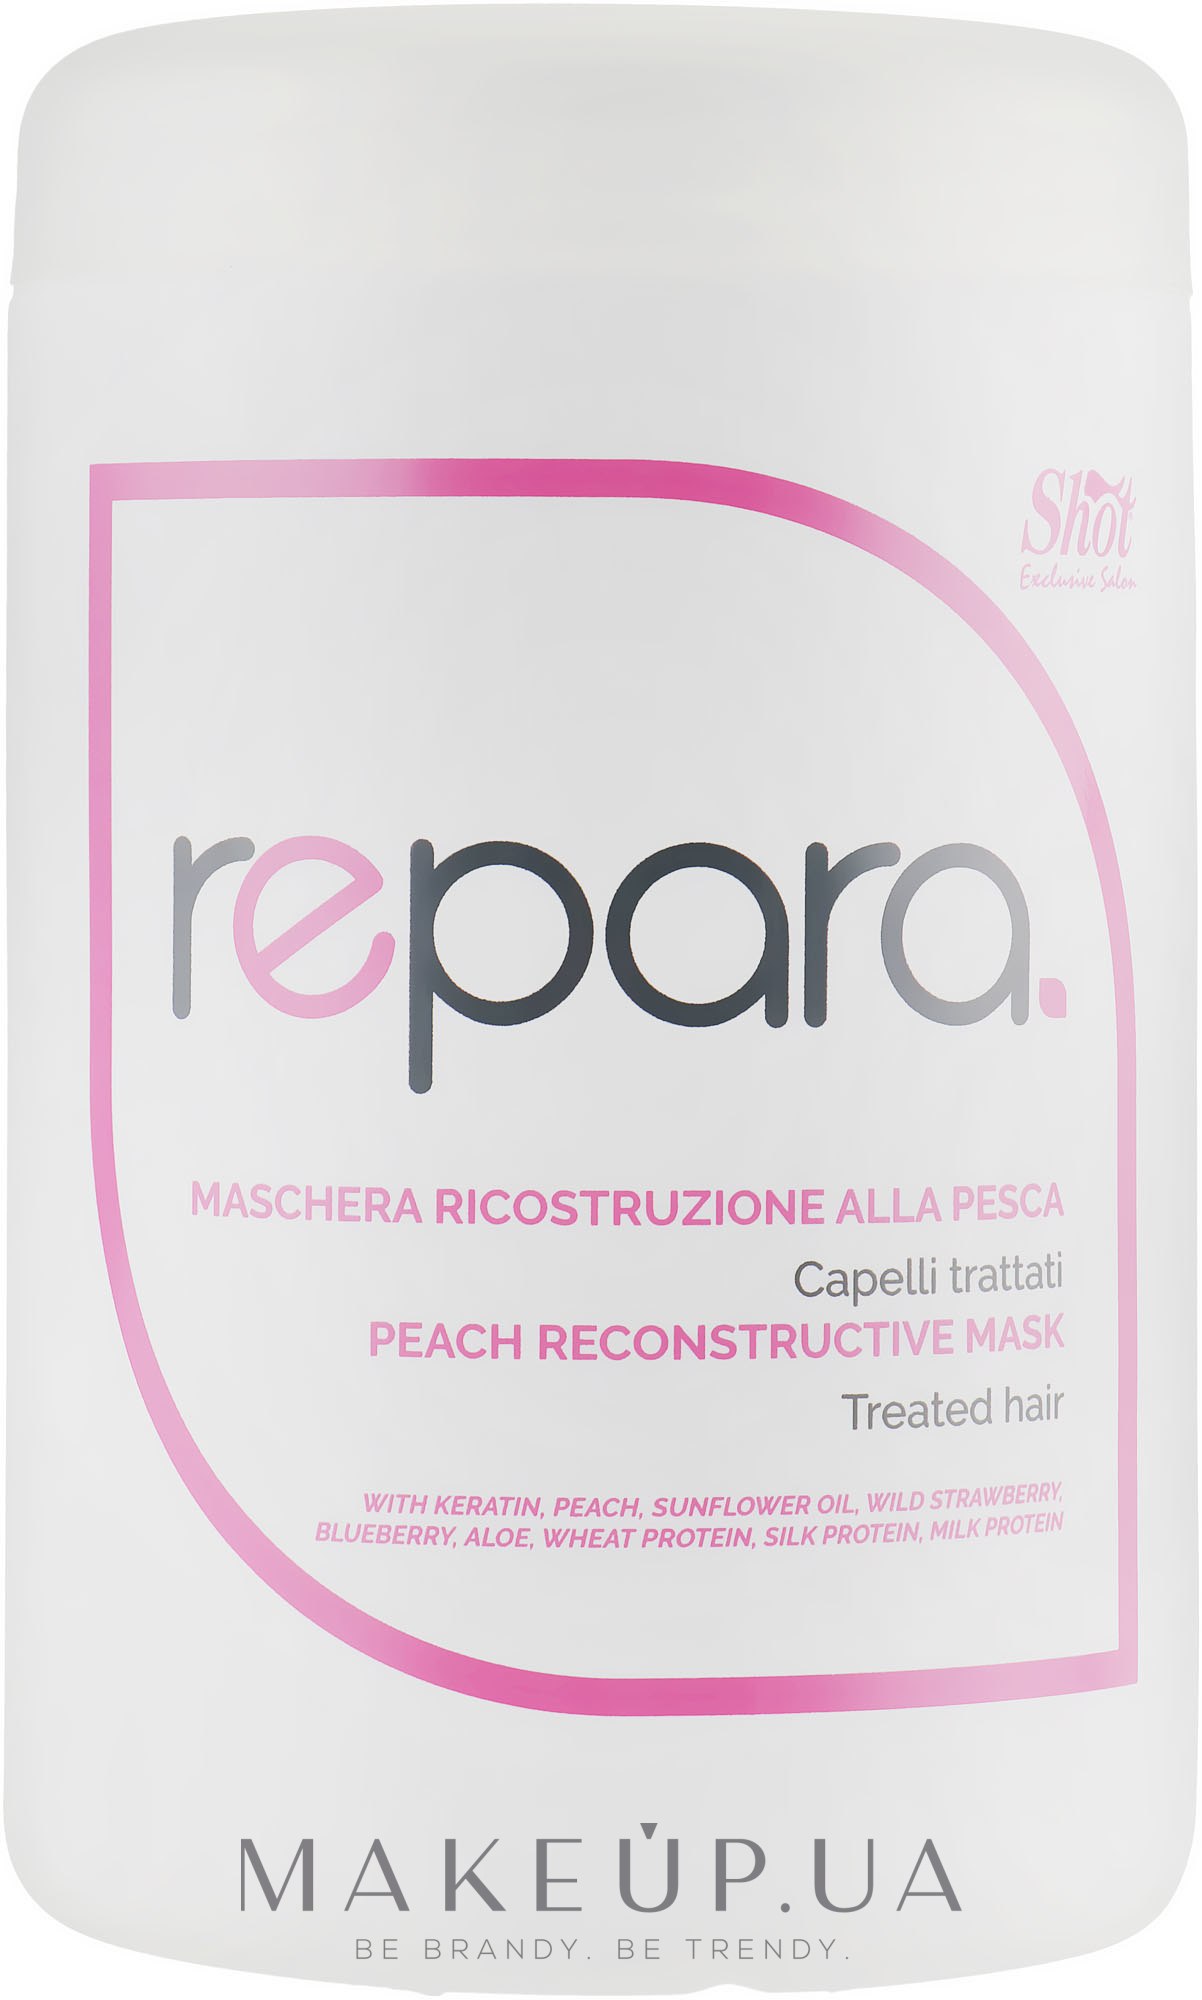 Восстанавливающая маска с персиком для поврежденных волос - Shot Peach Reconstructive Mask — фото 1000ml